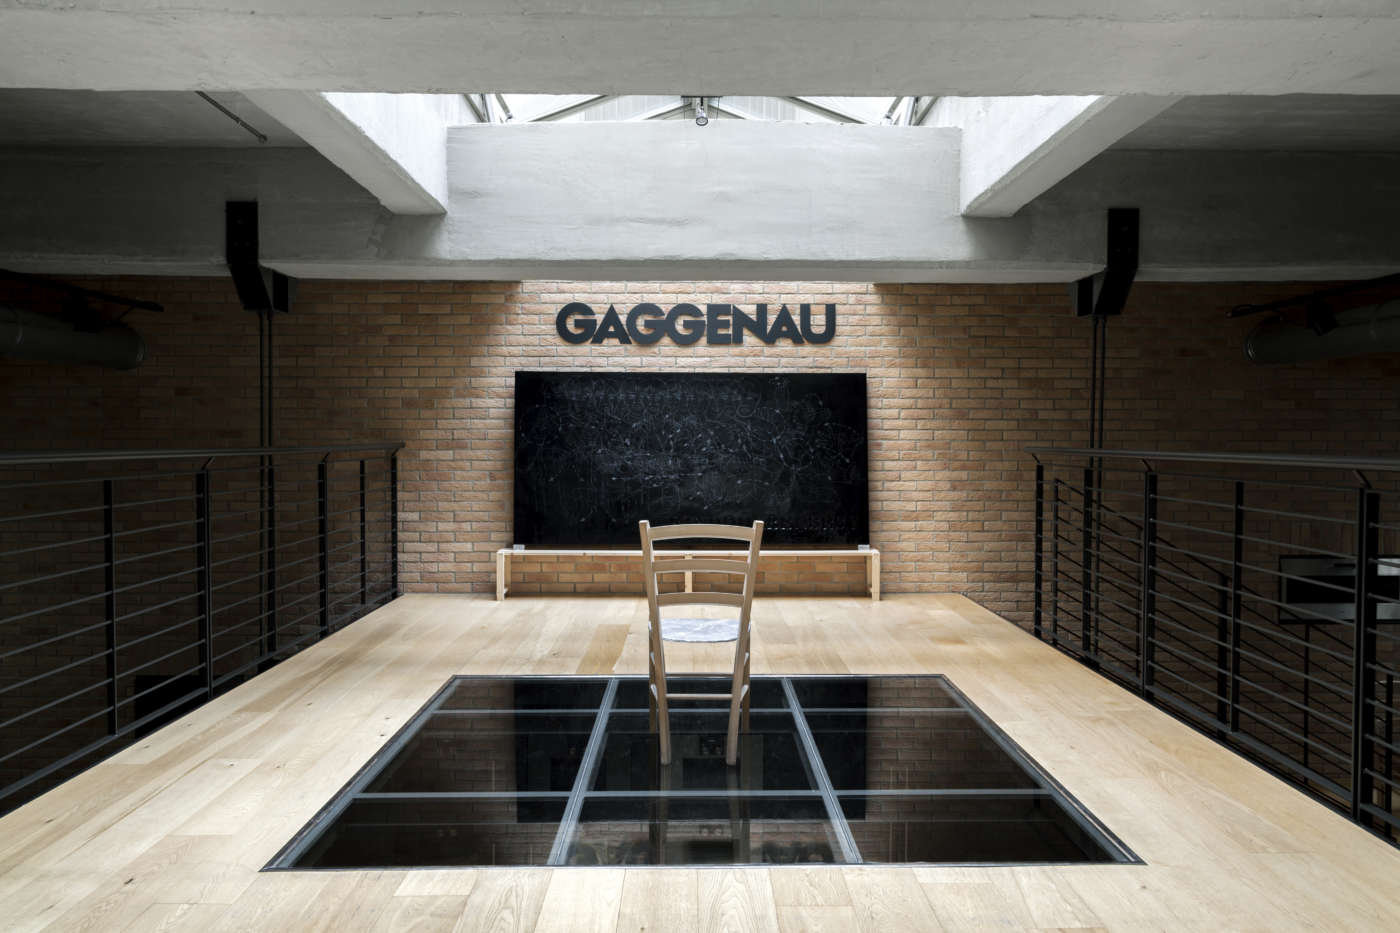 Gaggenau show room